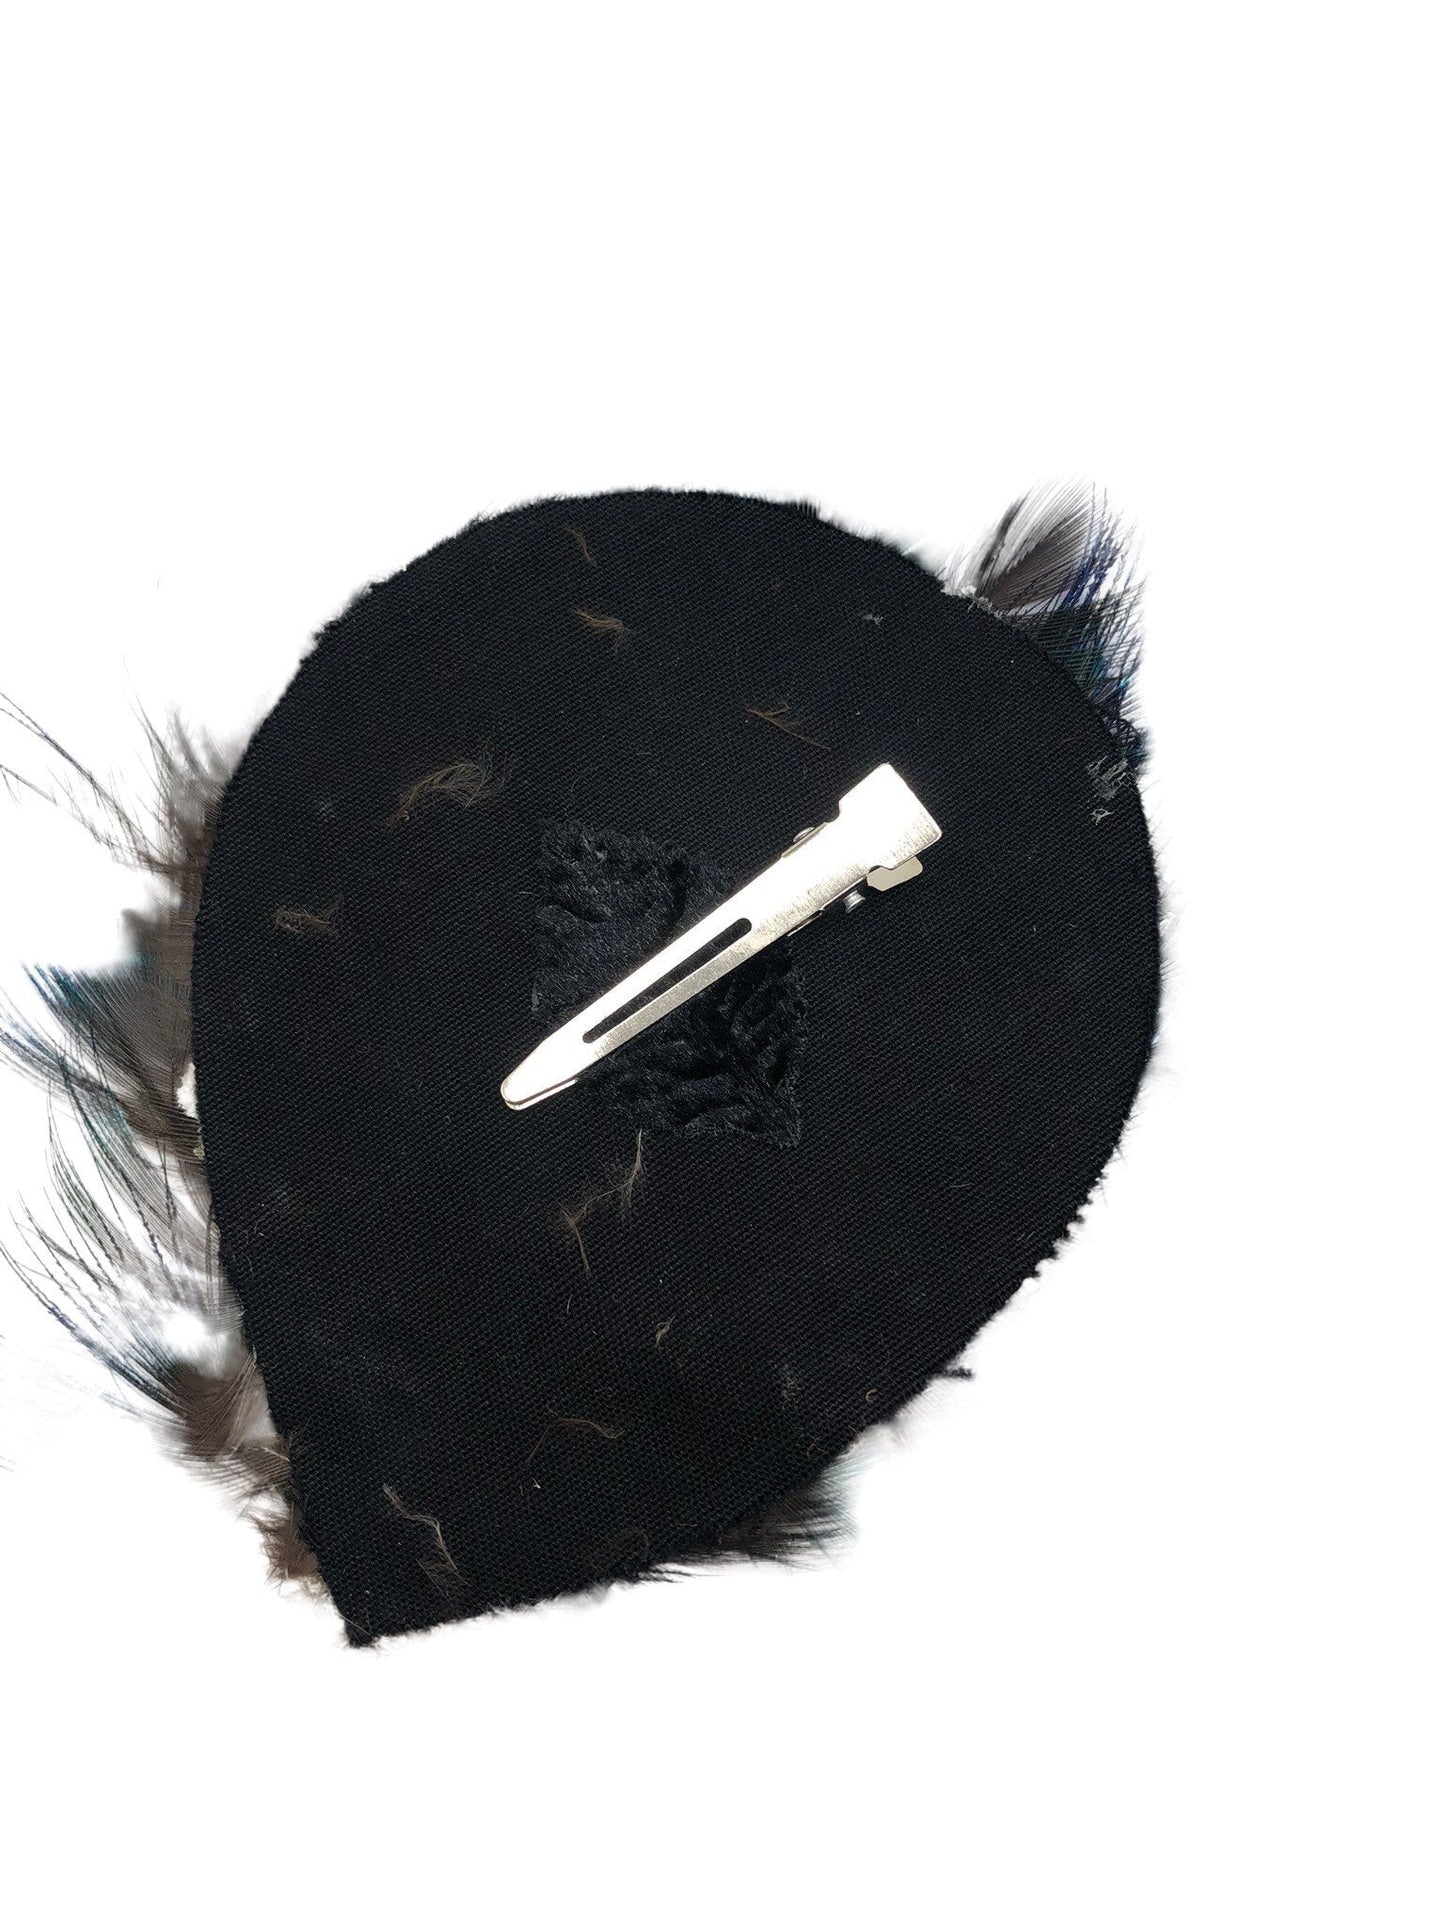 Karin's Garden Blue Tan Feather Pad Clip Environ 4 " x 3 " Clip dans les cheveux ou clip sur le revers